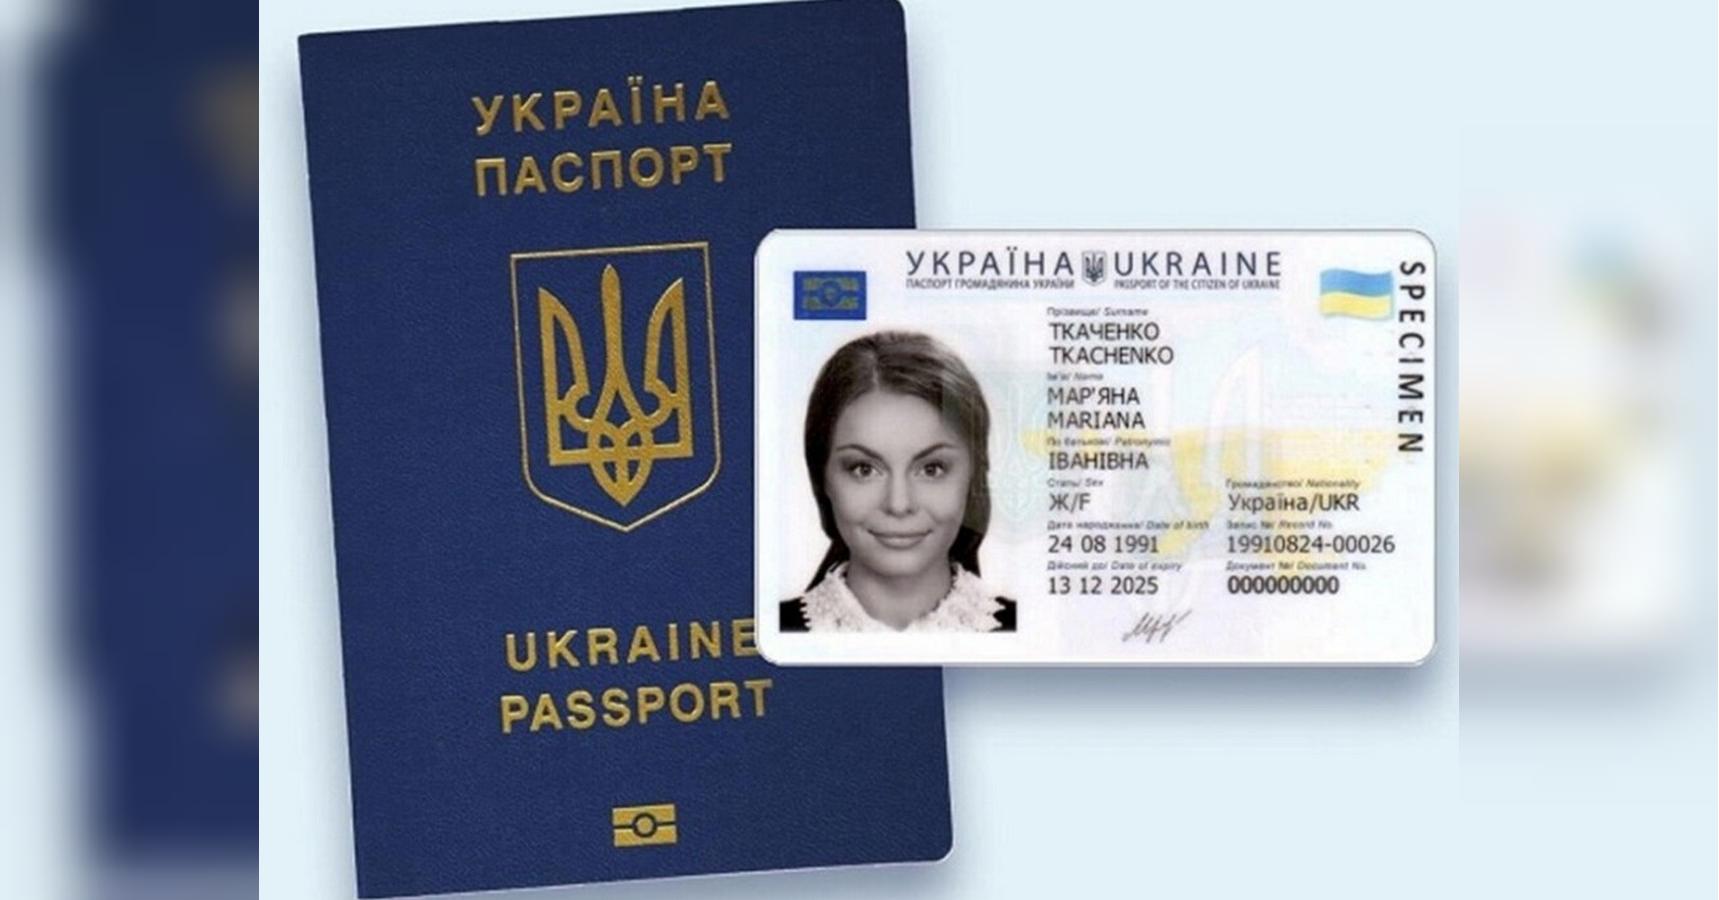 Военнообязанные украинцы больше не смогут получать загранпаспорта за рубежом, — решение Кабмина